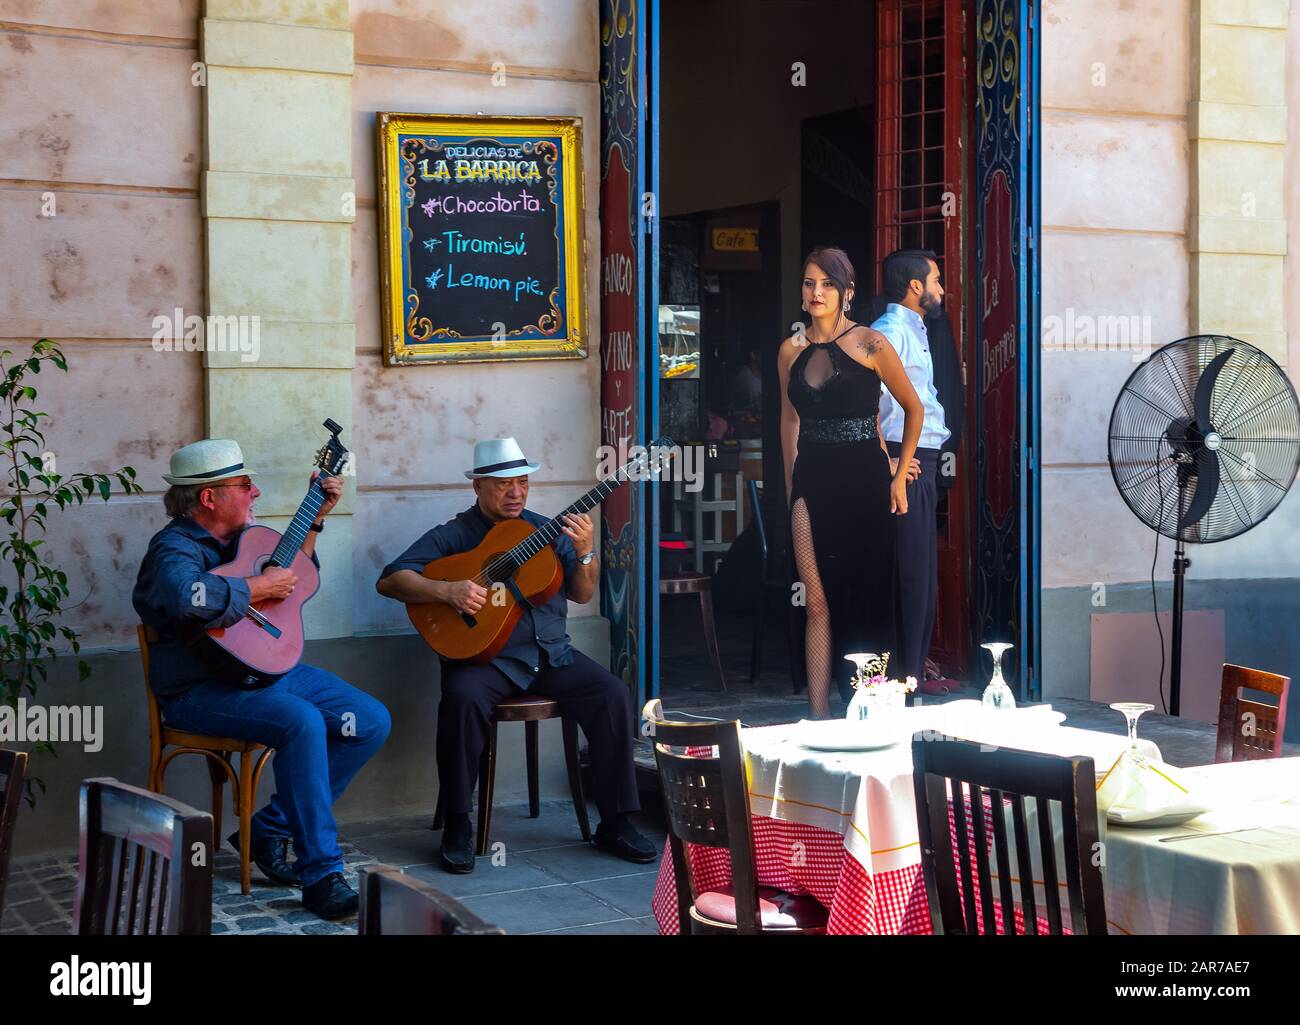 Buenos Aires, Argentina - 19 de enero de 2018: Barrio de la Boca, bailarines y músicos de tango tradicionales en un bar y restaurante de la calle Caminito Foto de stock